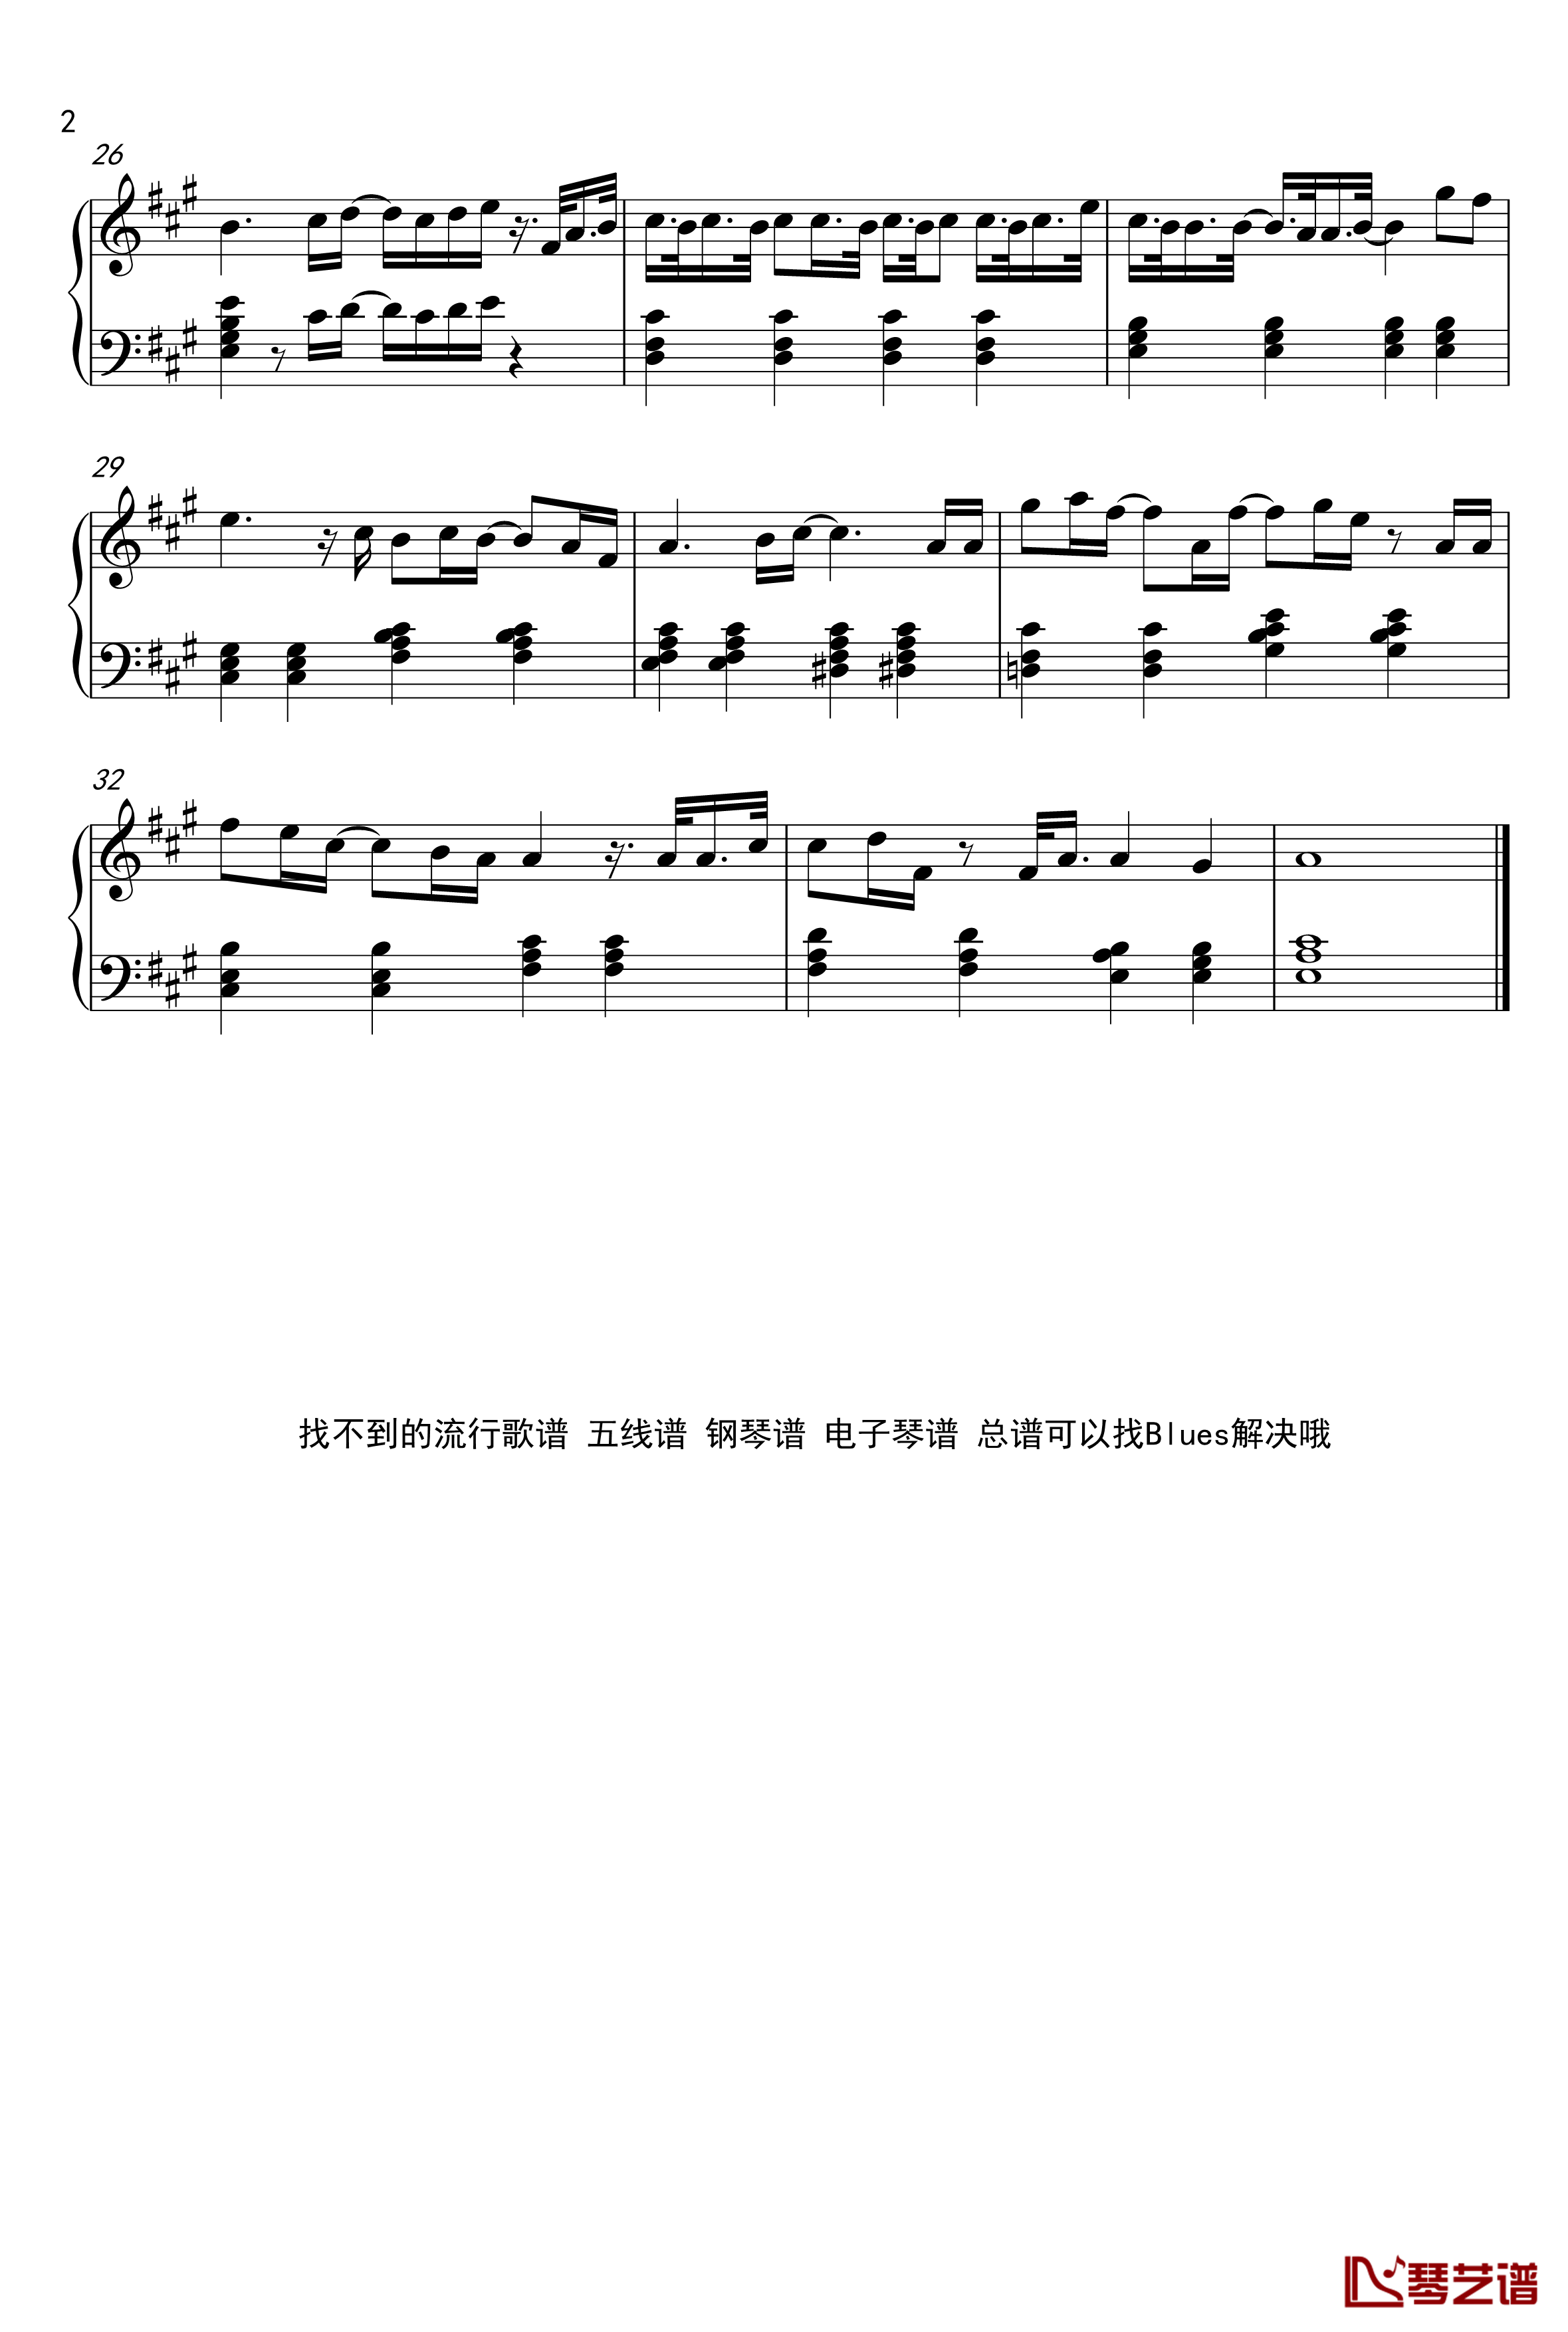 小棉袄尤克里里谱 - 王俊凯 - 琴谱网